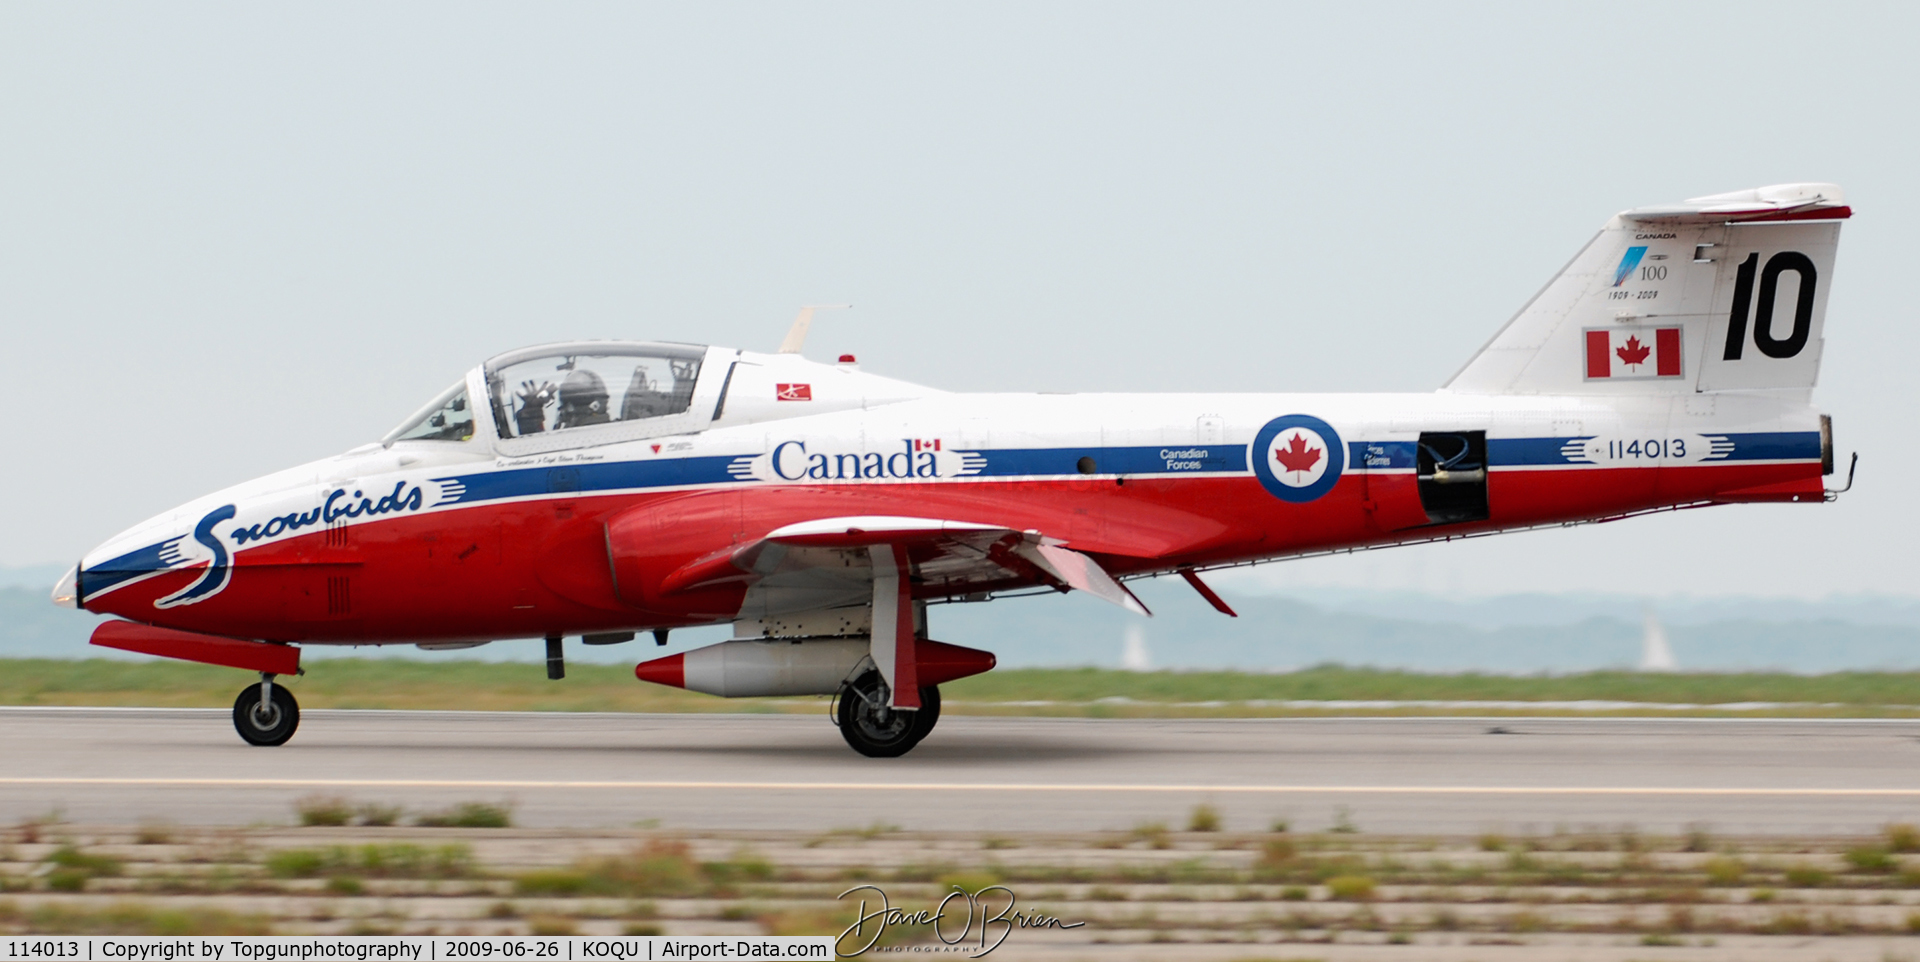 114013, 1962 Canadair CT-114 Tutor C/N 1013, Snowbird 10